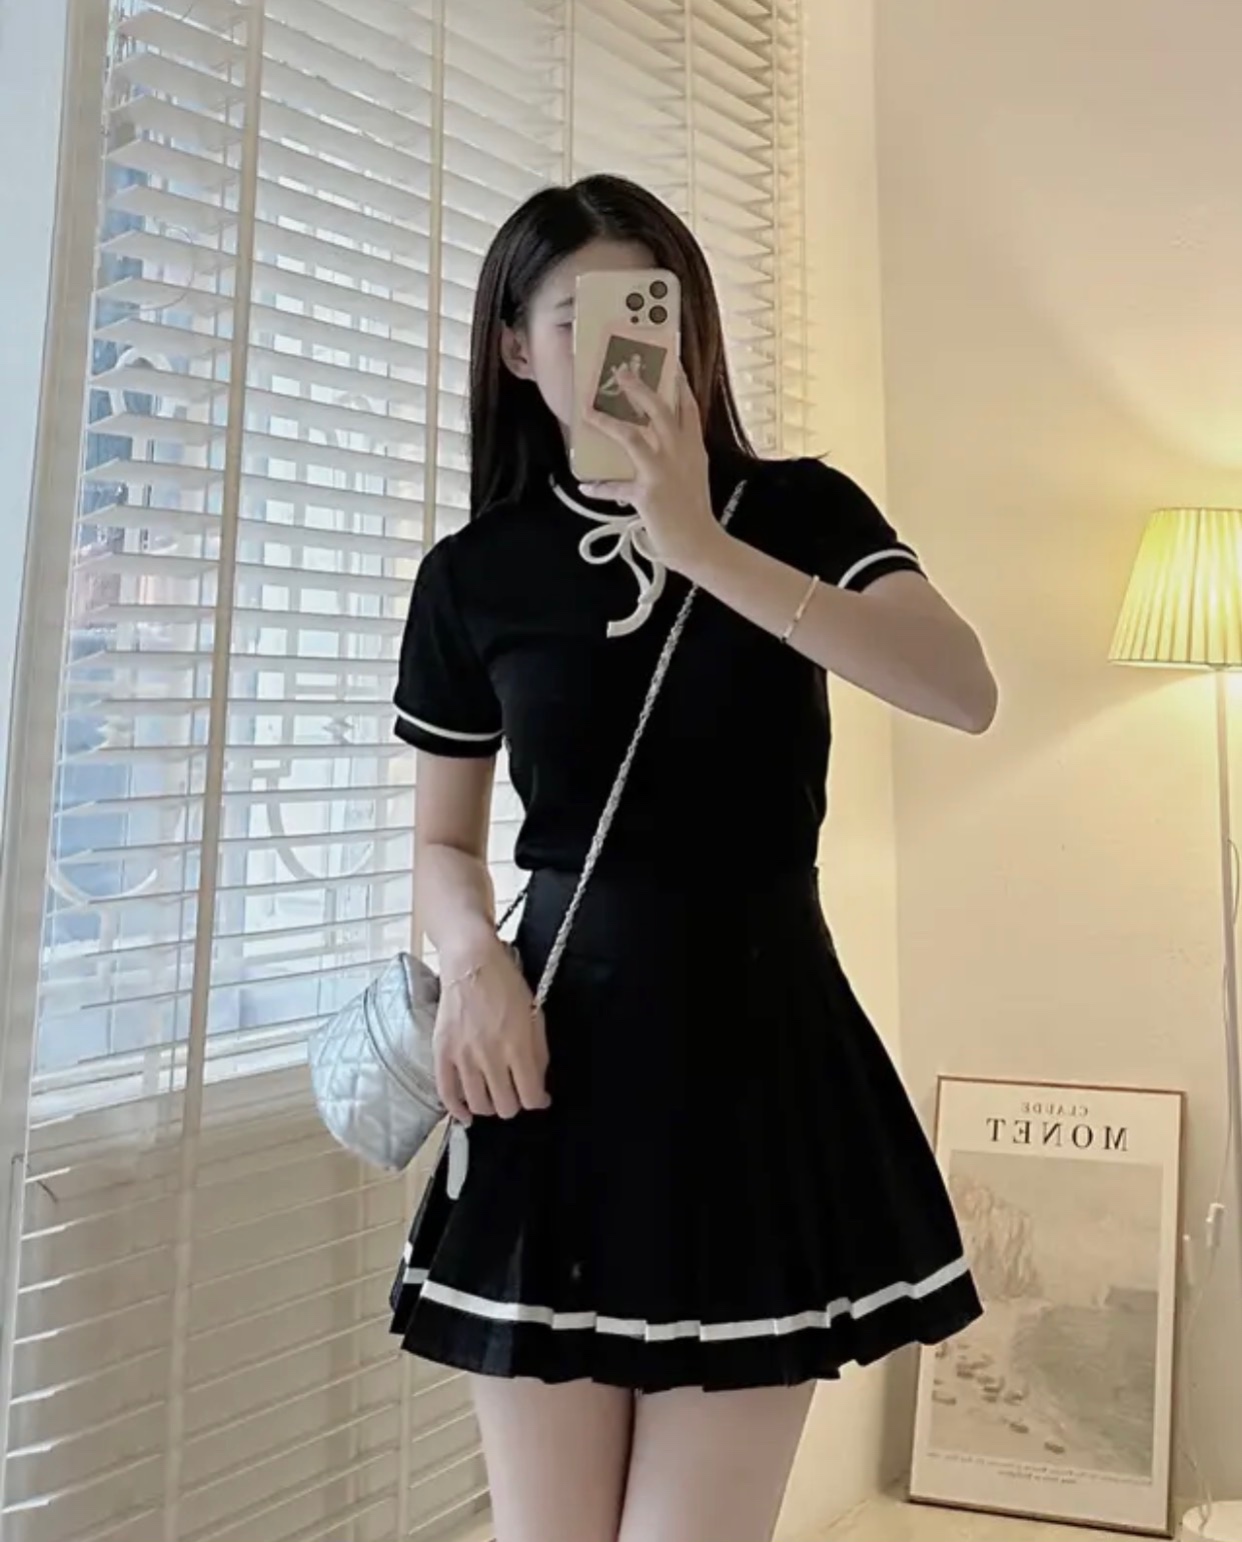 Set Đồ Nữ Áo Len Tăm Body Cổ Tròn Nơ Phối Chân Váy Dập Ly Viền Sọc  Phong Cách Trẻ Trung Năng Động Với 2 Tone màu Nhẹ Nhàng